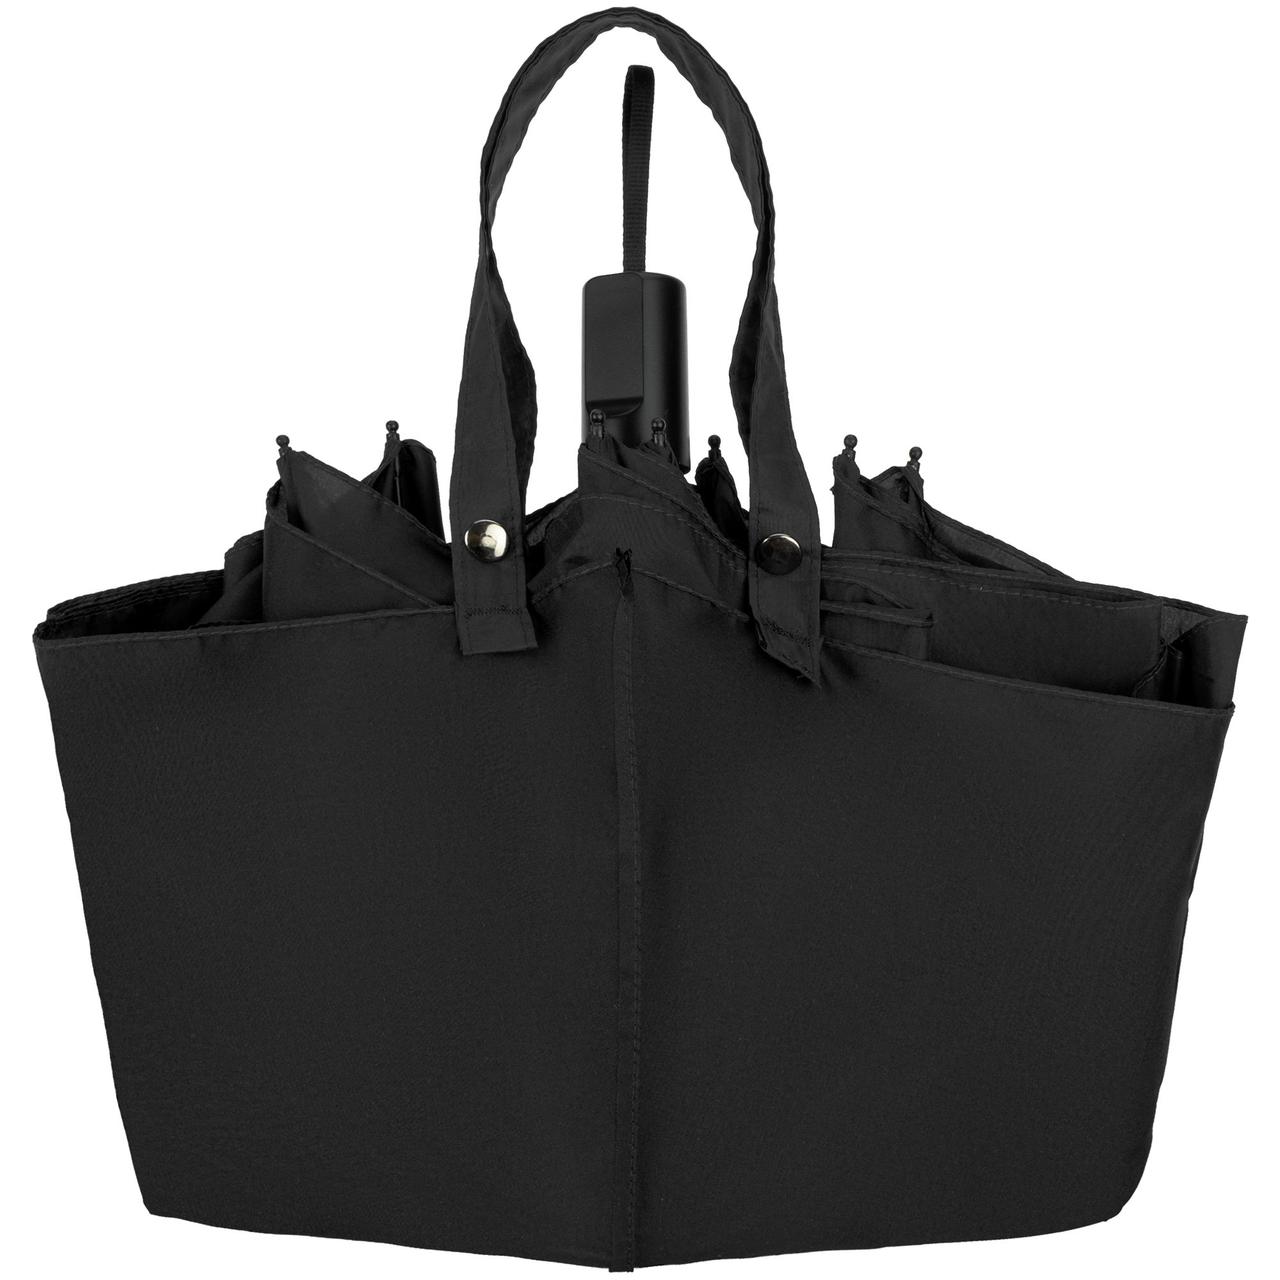 Зонт-сумка складной Stash, черный (артикул 10991.30), фото 1